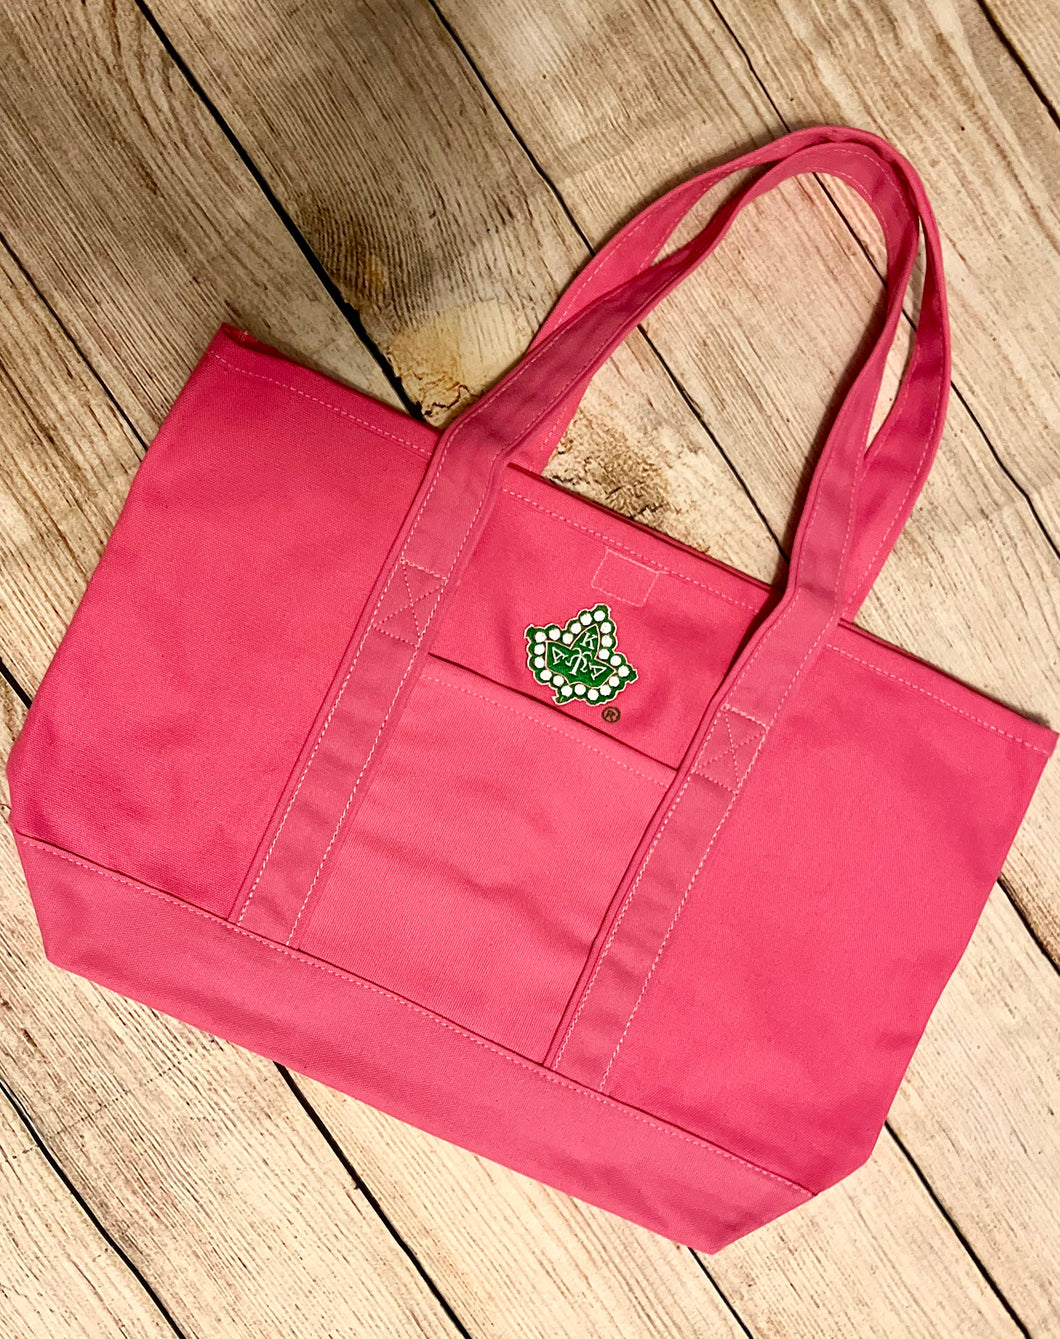 AKA Hot Pink Tote Bag